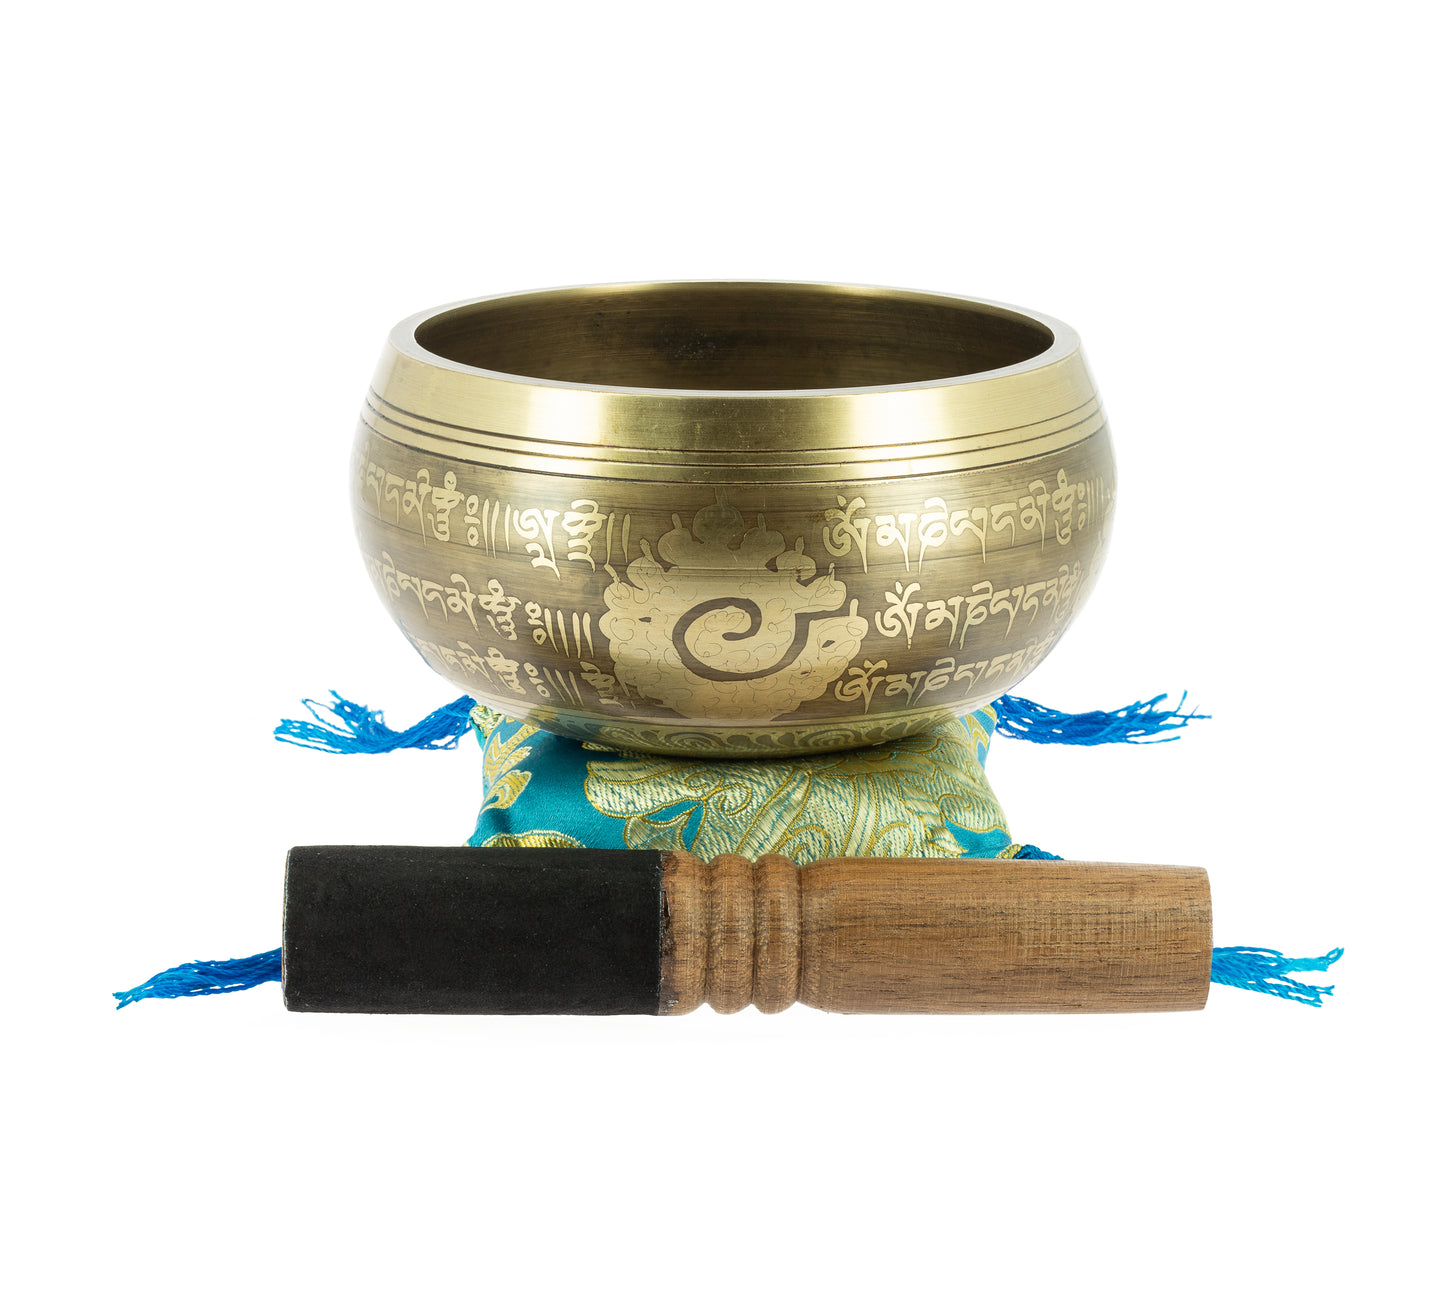 Tibetan Singing Bowl with Engravings - 12 cm